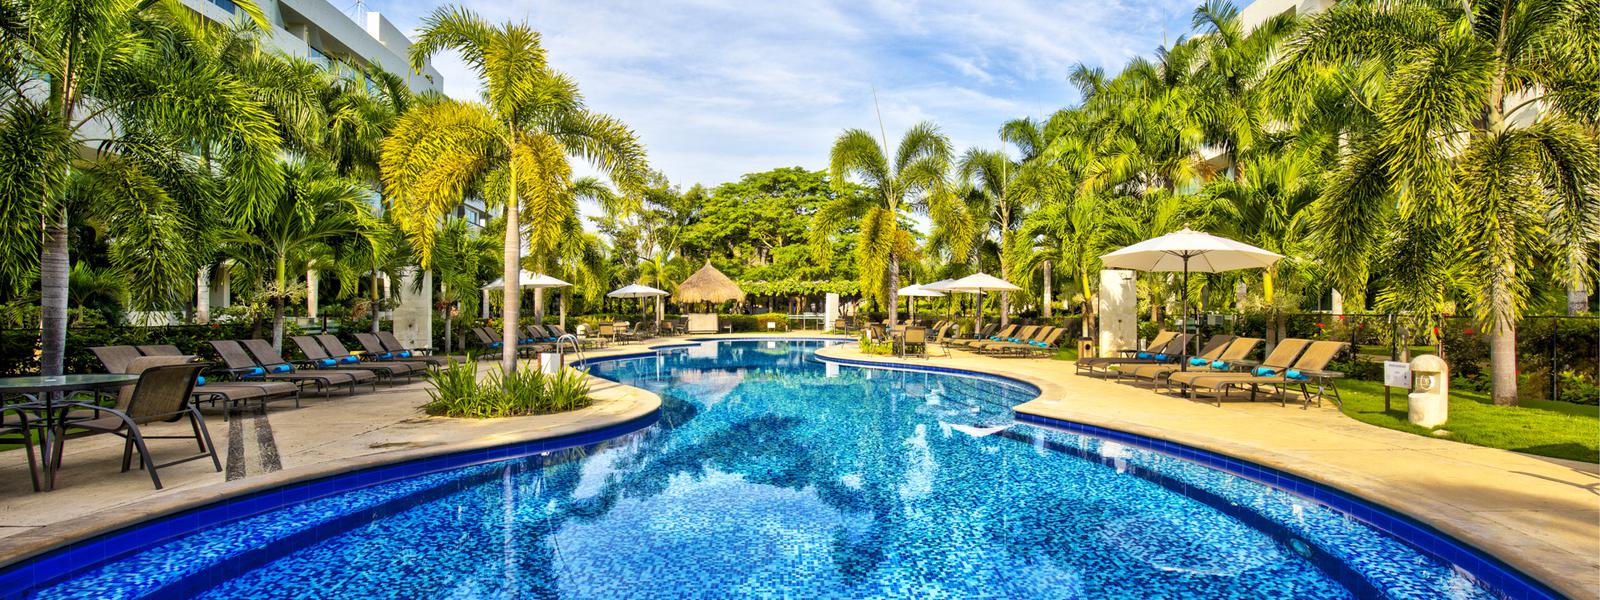  Hotel ESTELAR Playa Manzanillo Cartagena de Indias